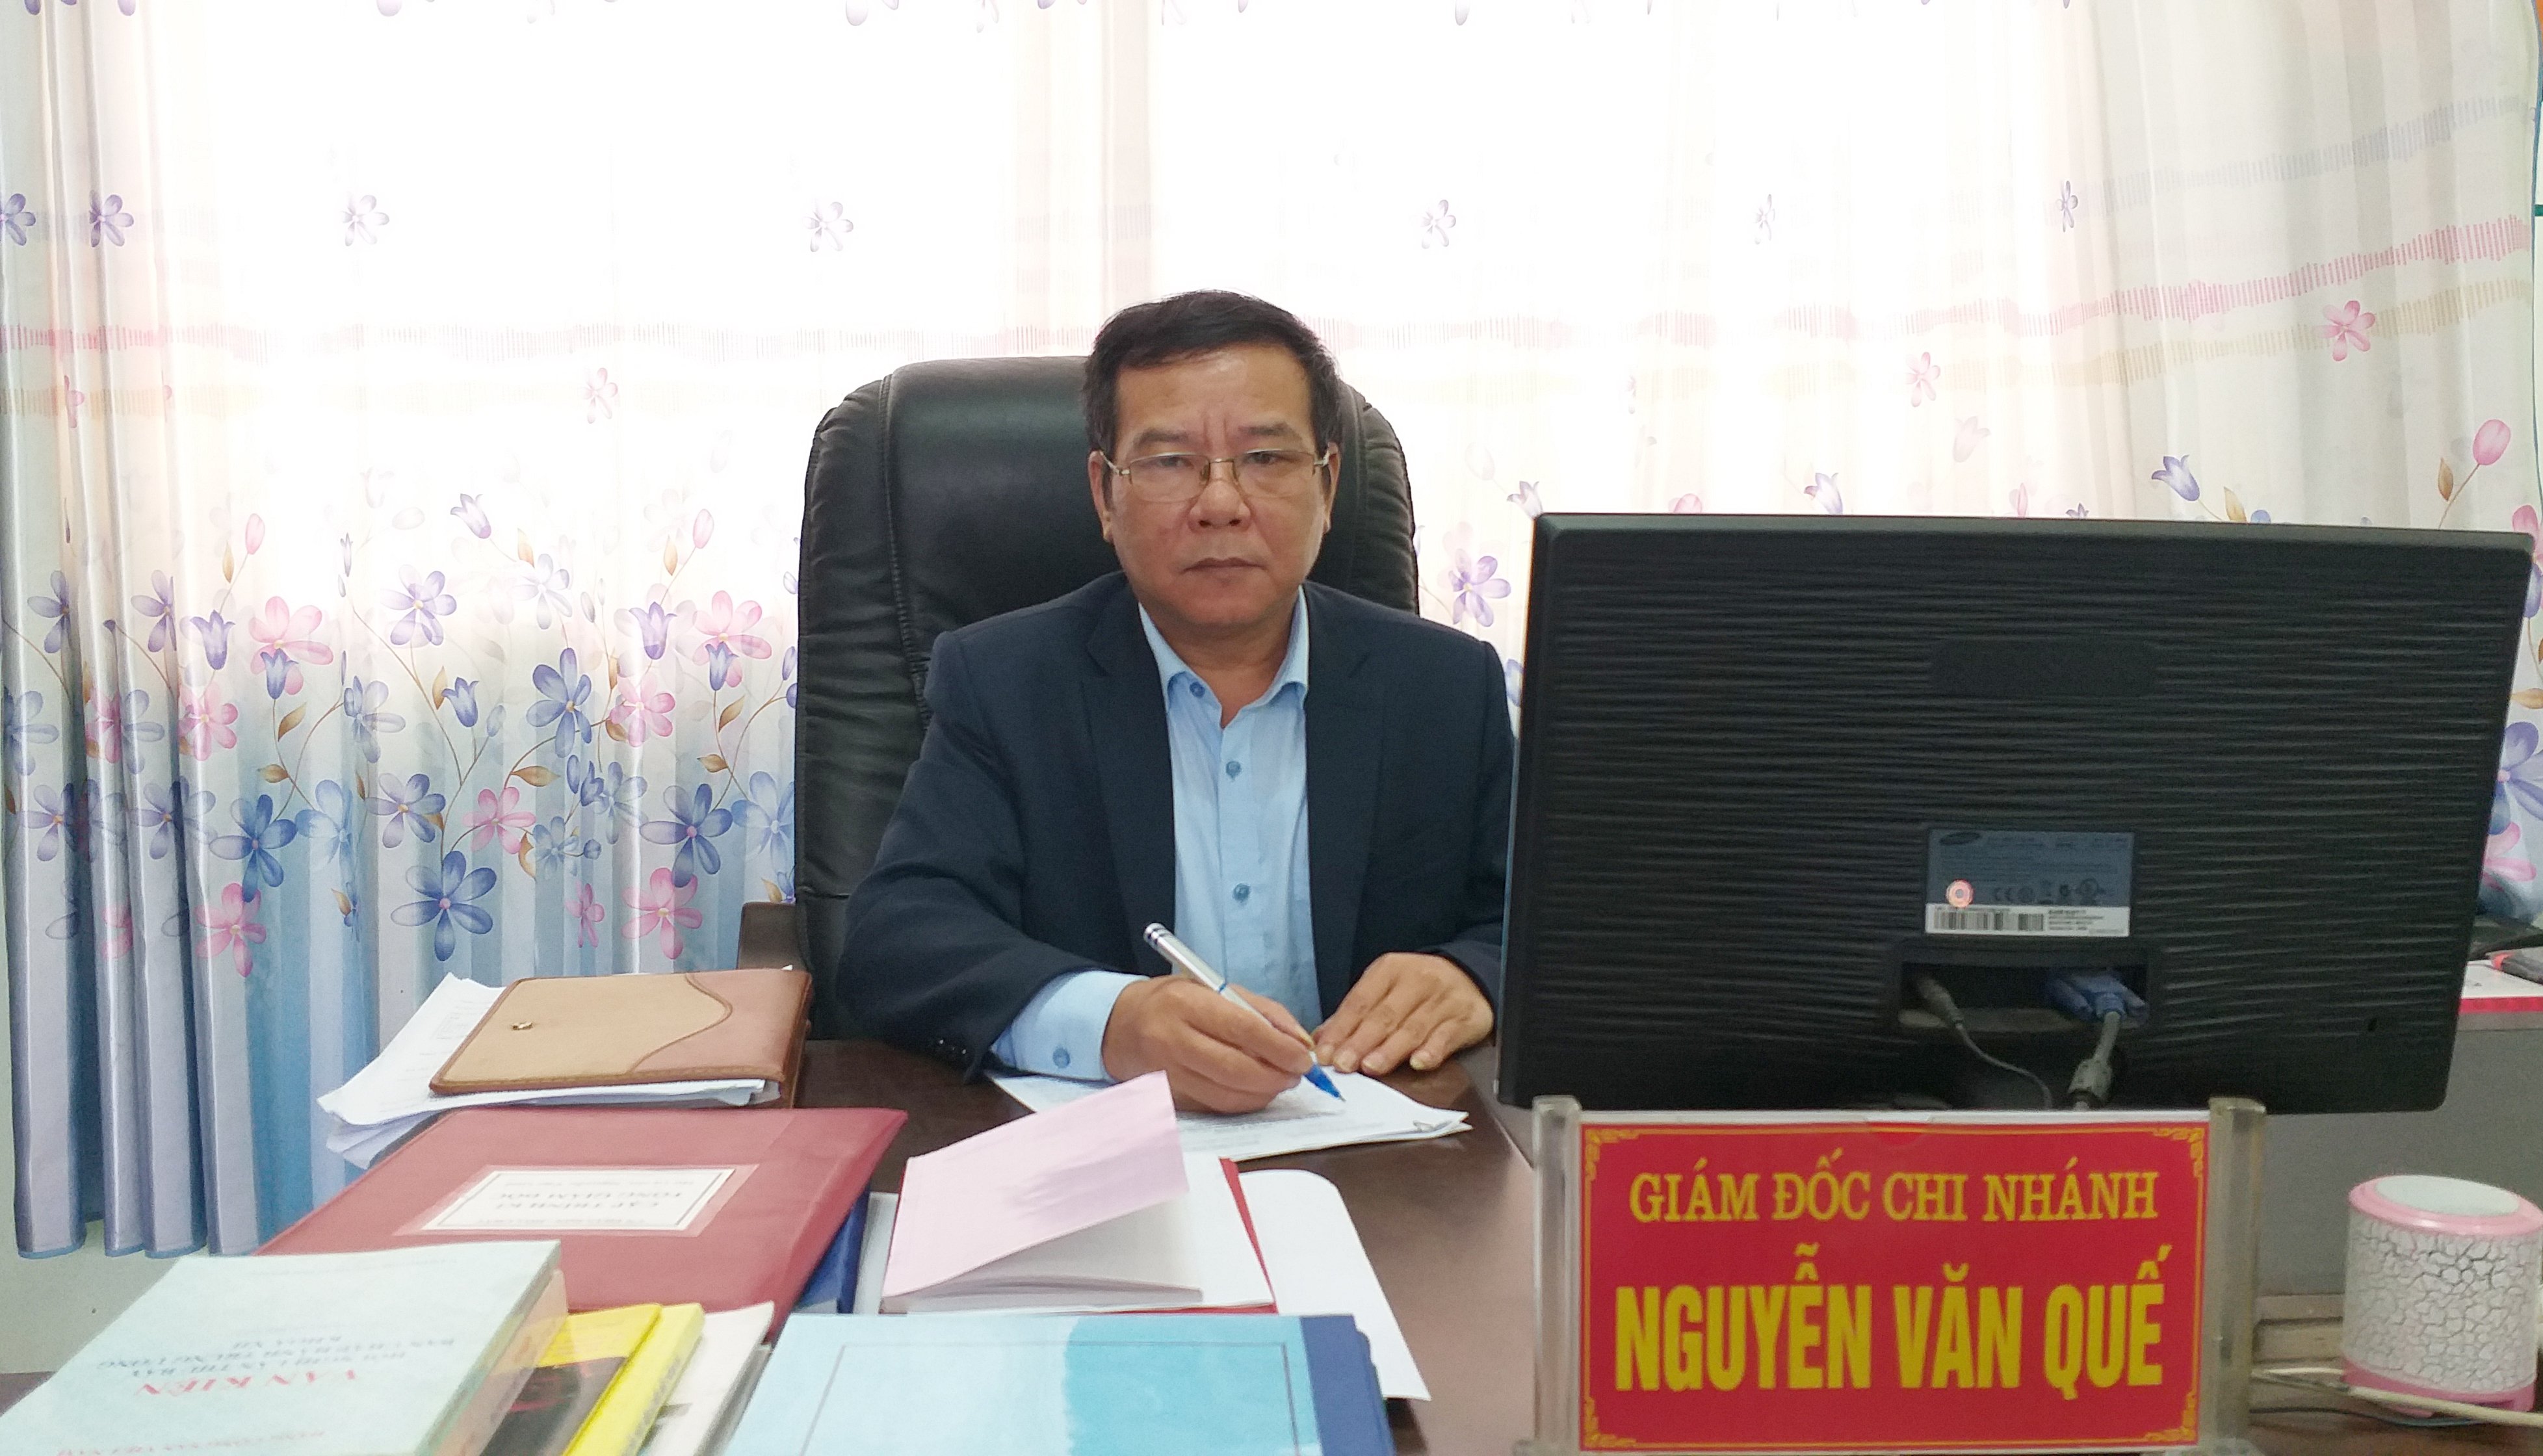 Ông Nguyễn Văn Quế, Giám đốc chi nhánh thuộc công ty TNHH MTV Apatit Việt Nam